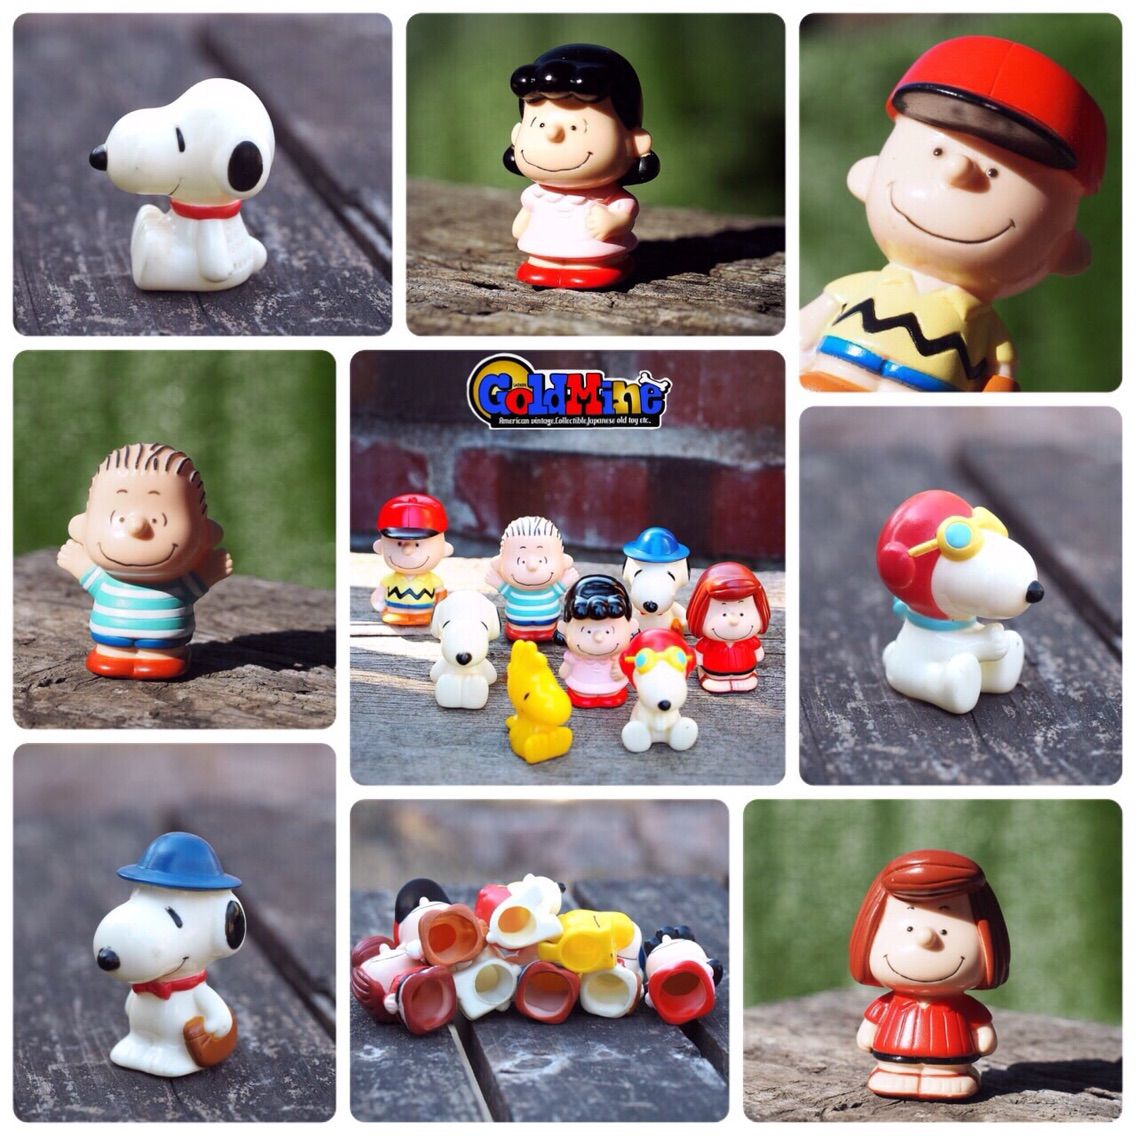 国産 スヌーピー指人形セット バンダイ 1991 The Old Snoopy Collection